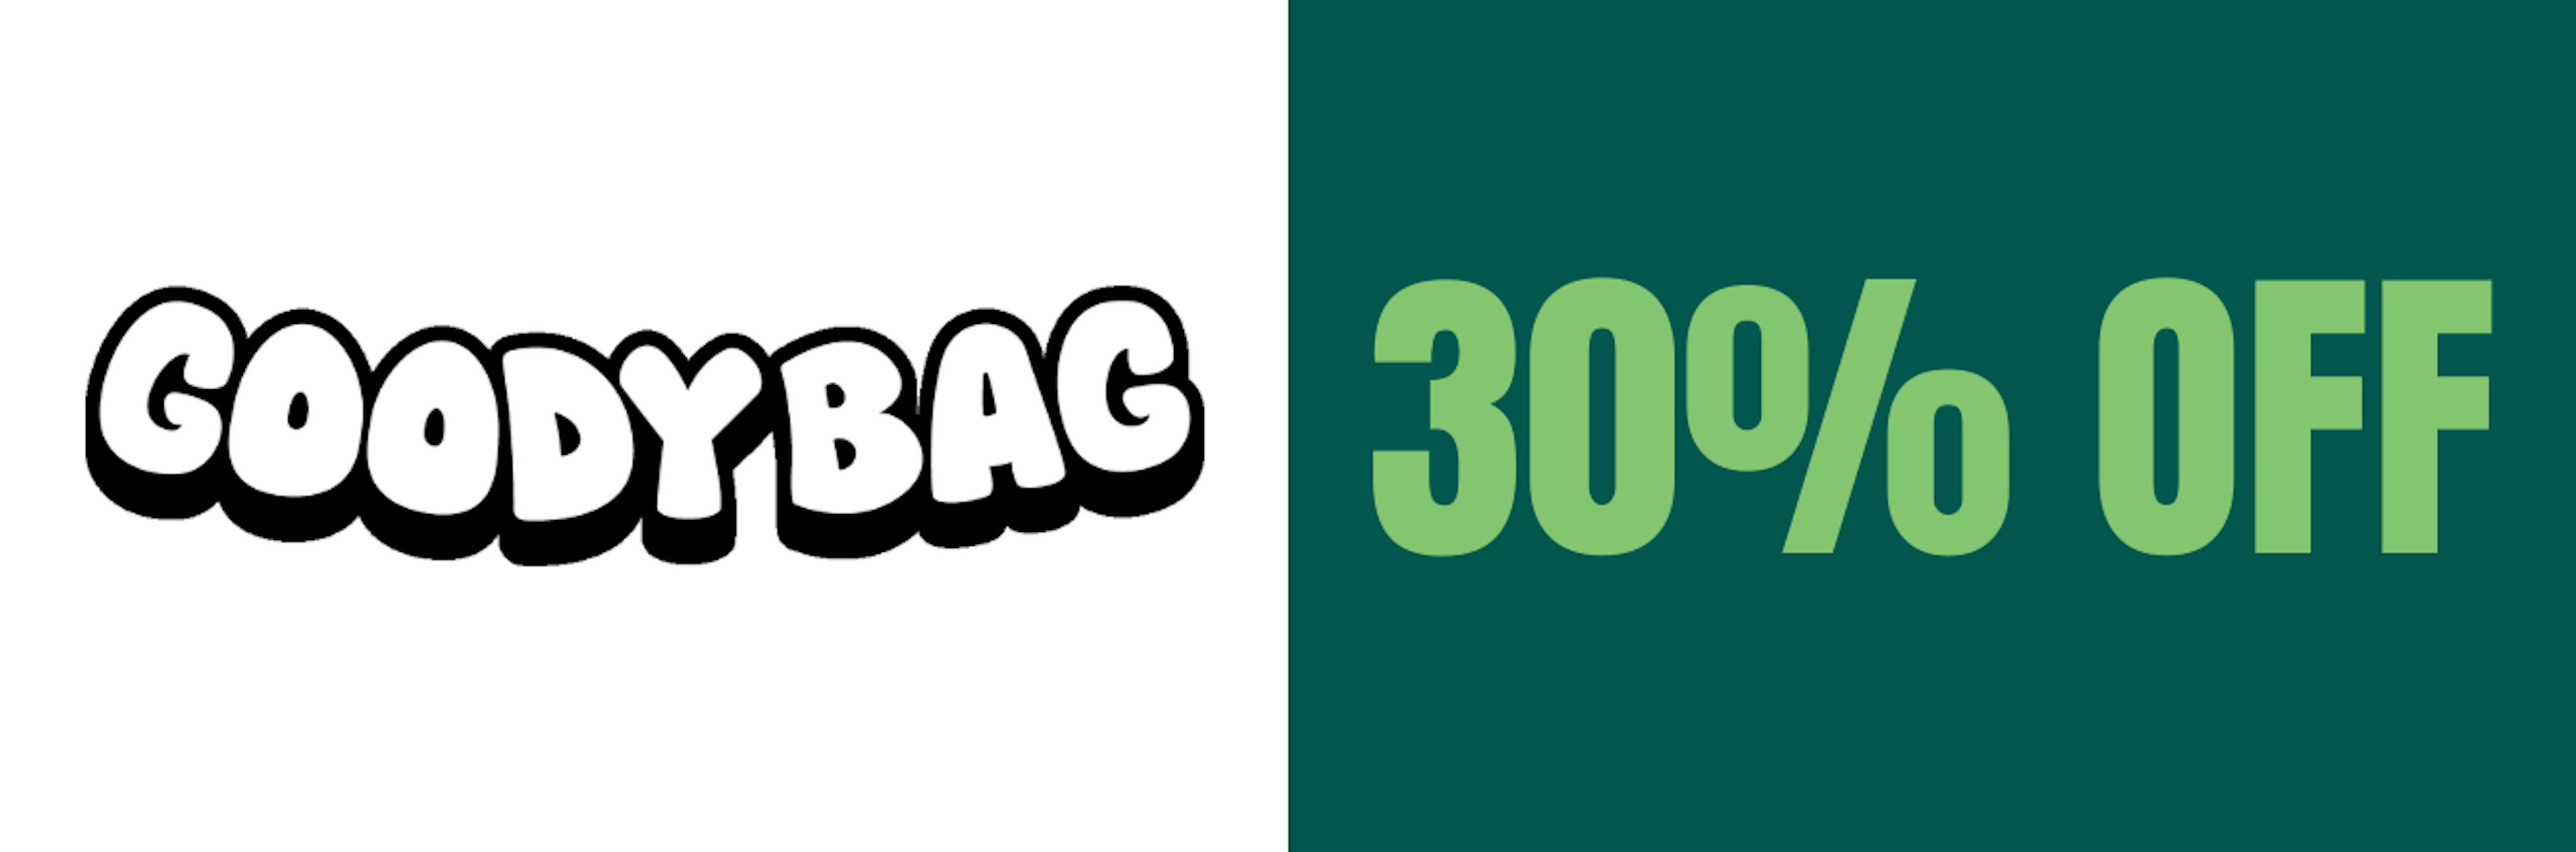 30% Off: Goody Bag